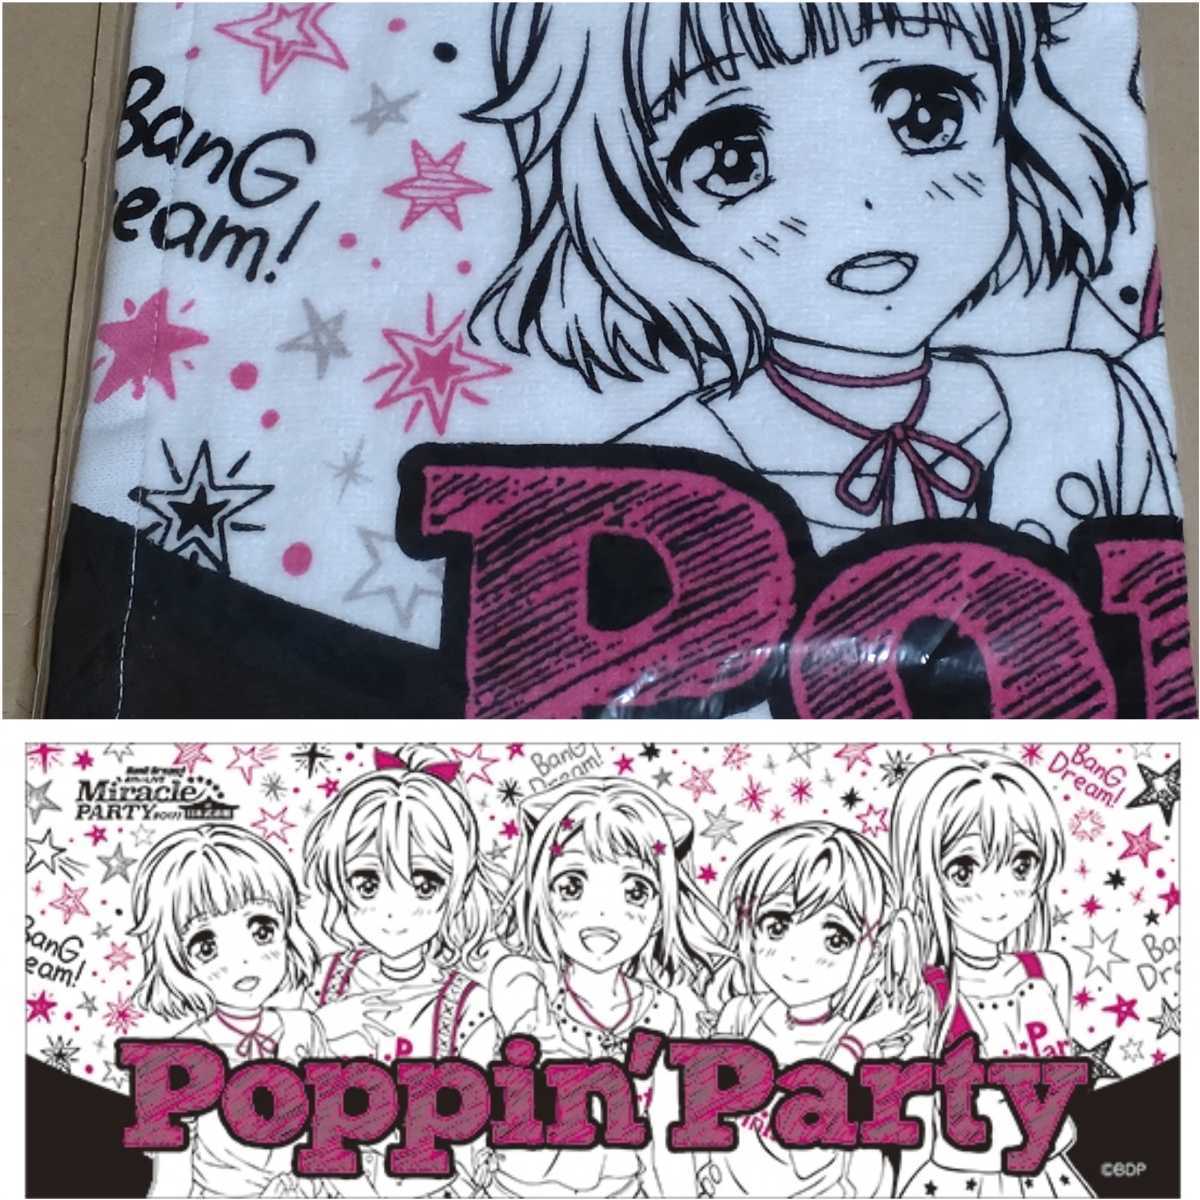 人気 バンドリ 4th☆LIVE BanG Dream Miracle 待望 PARTY Poppin’Party タオル 2017 日本武道館 at